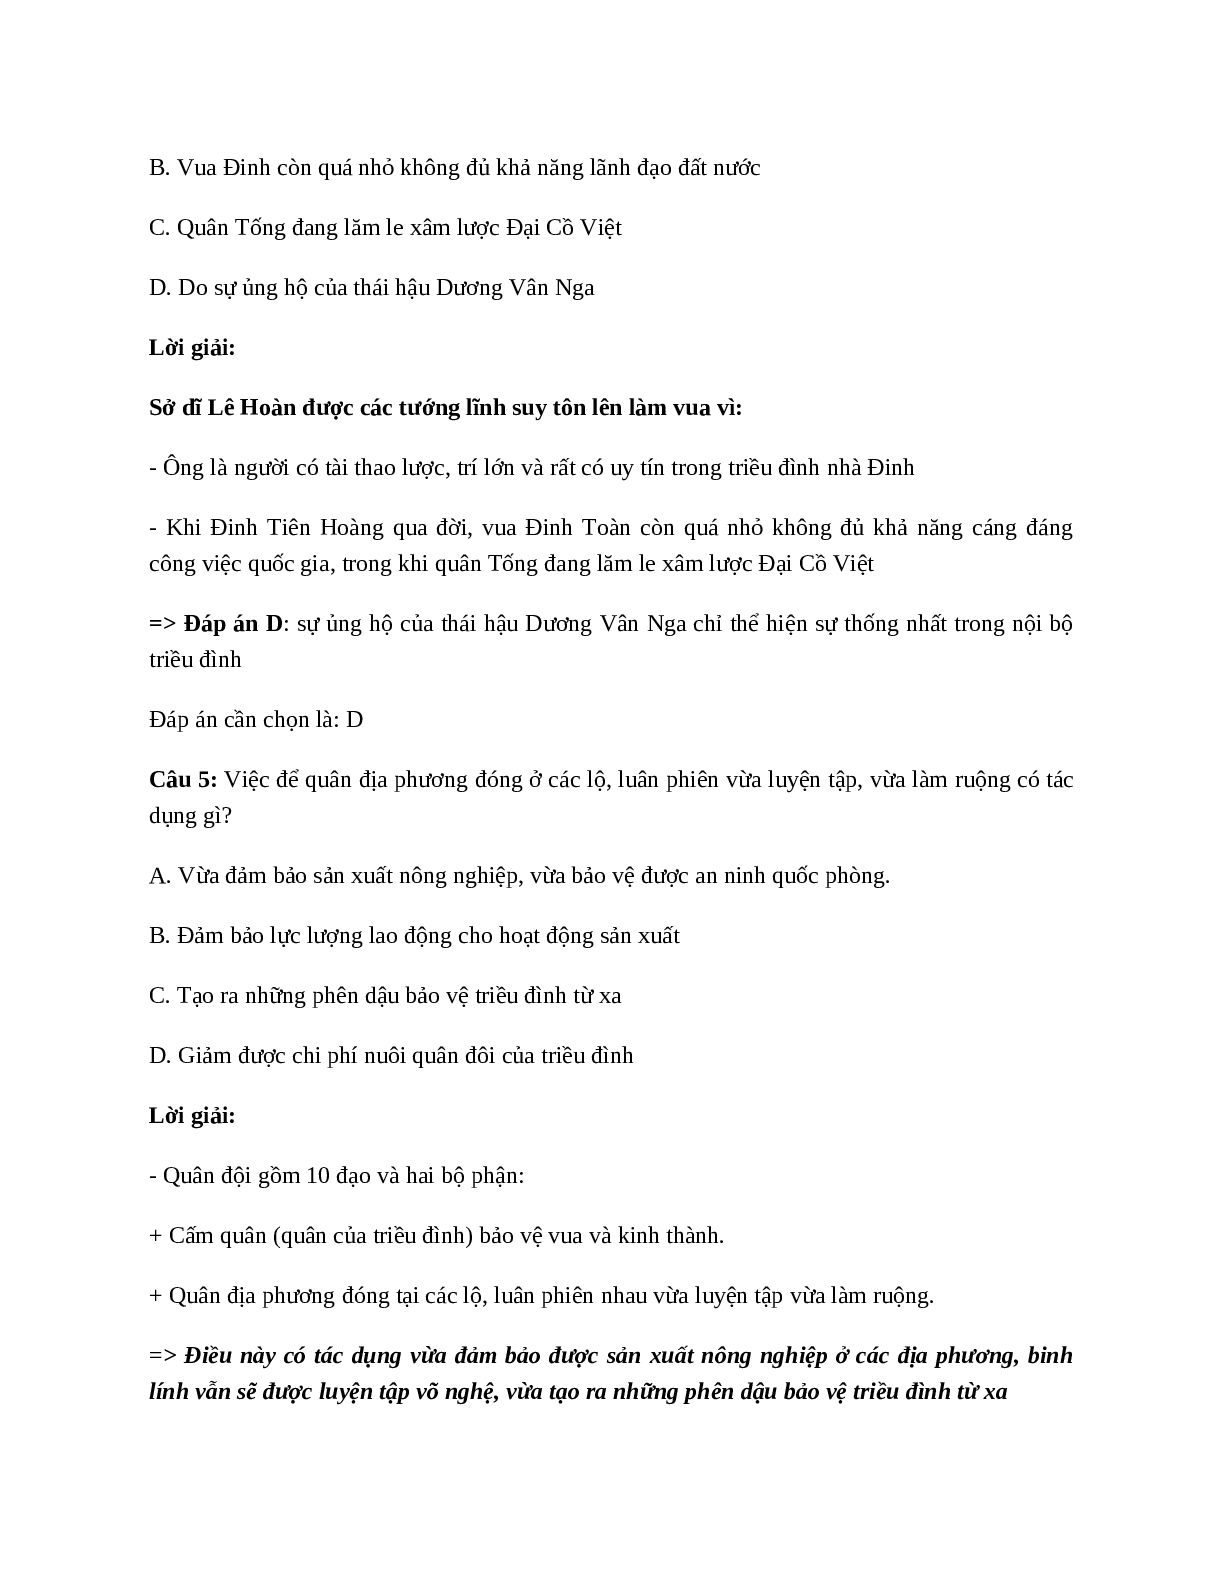 Lịch Sử 7 Bài 9: Nước Đại Cồ Việt thời Đinh - Tiền Lê (trang 8)